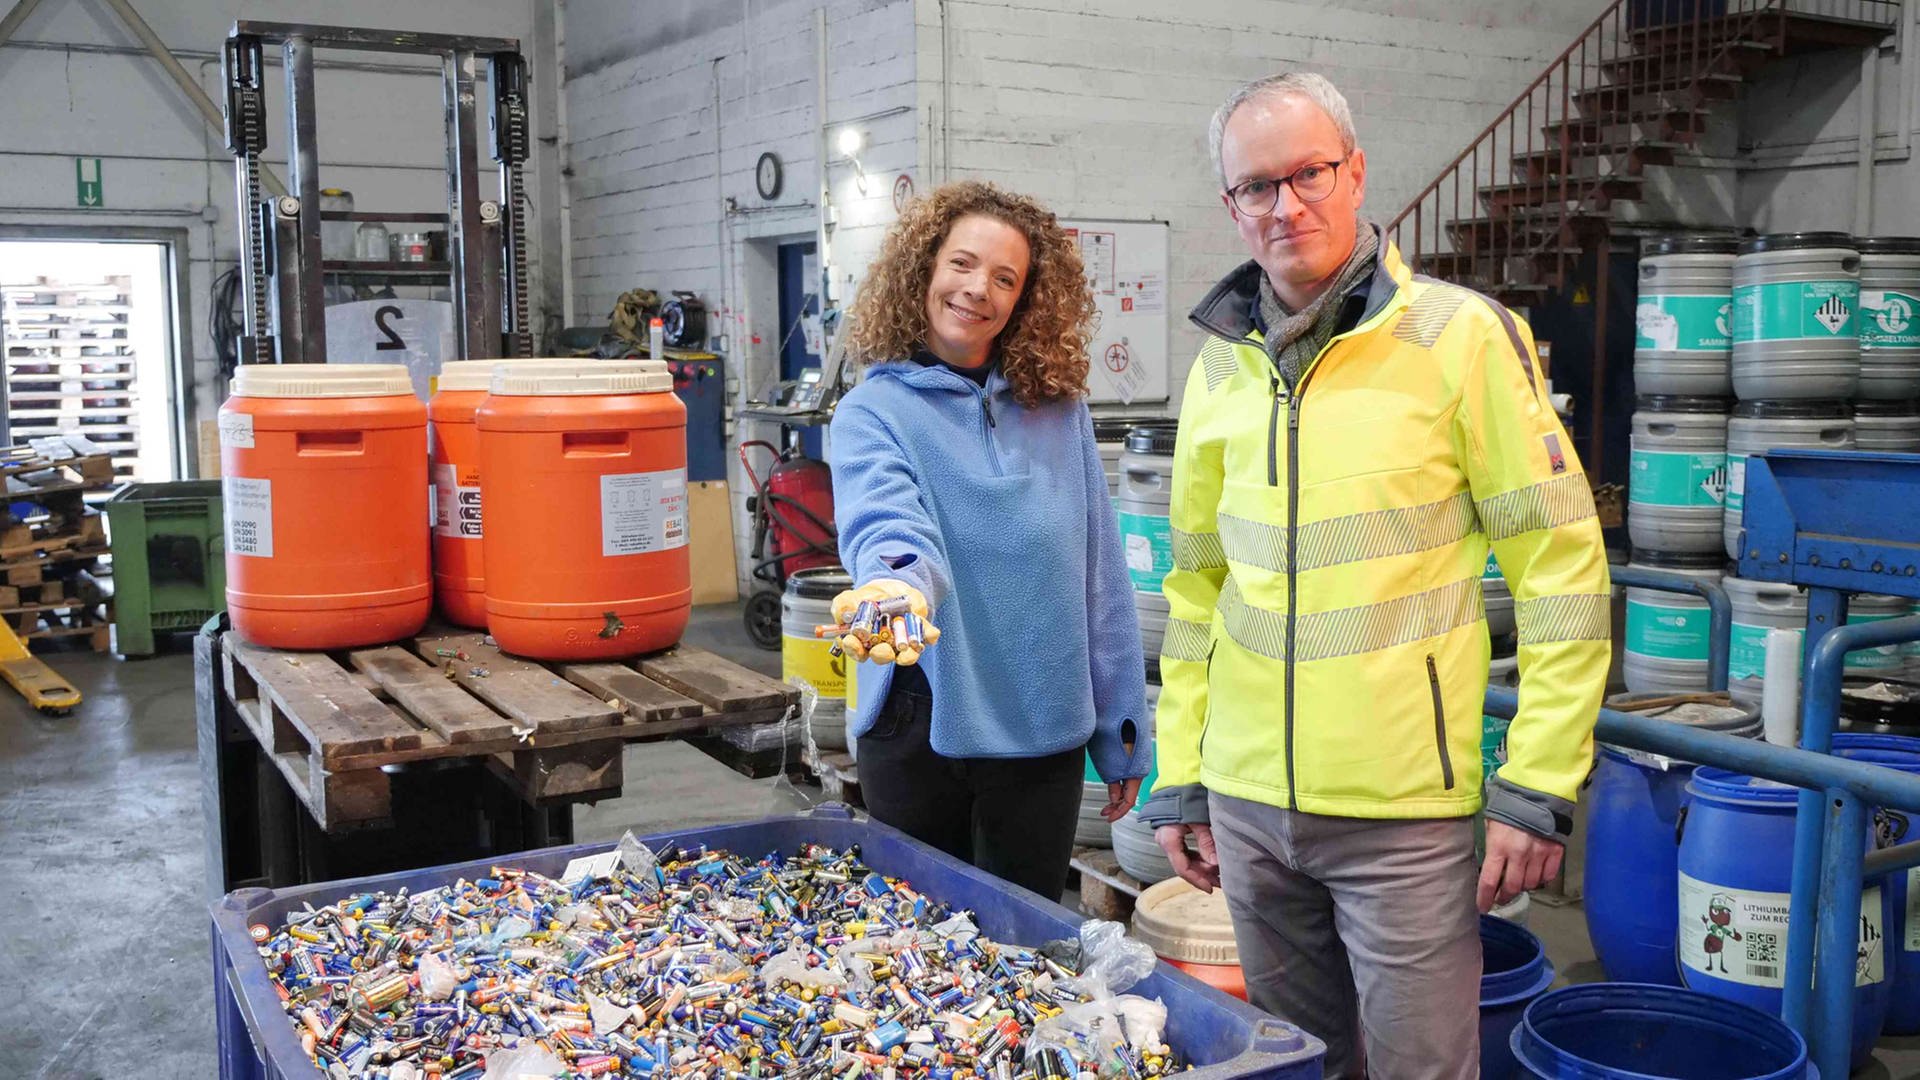 neuneinhalb-Reporterin Gesa und Florian Clever stehen vor einer großen blauen Plastikwanne voller Altbatterien in einer Recycling-Anlage. Im Hintergrund stehen bunte Plastikfässer voller Batterien. Gesa hält eine Handvoll Batterien in Richtung Kamera.